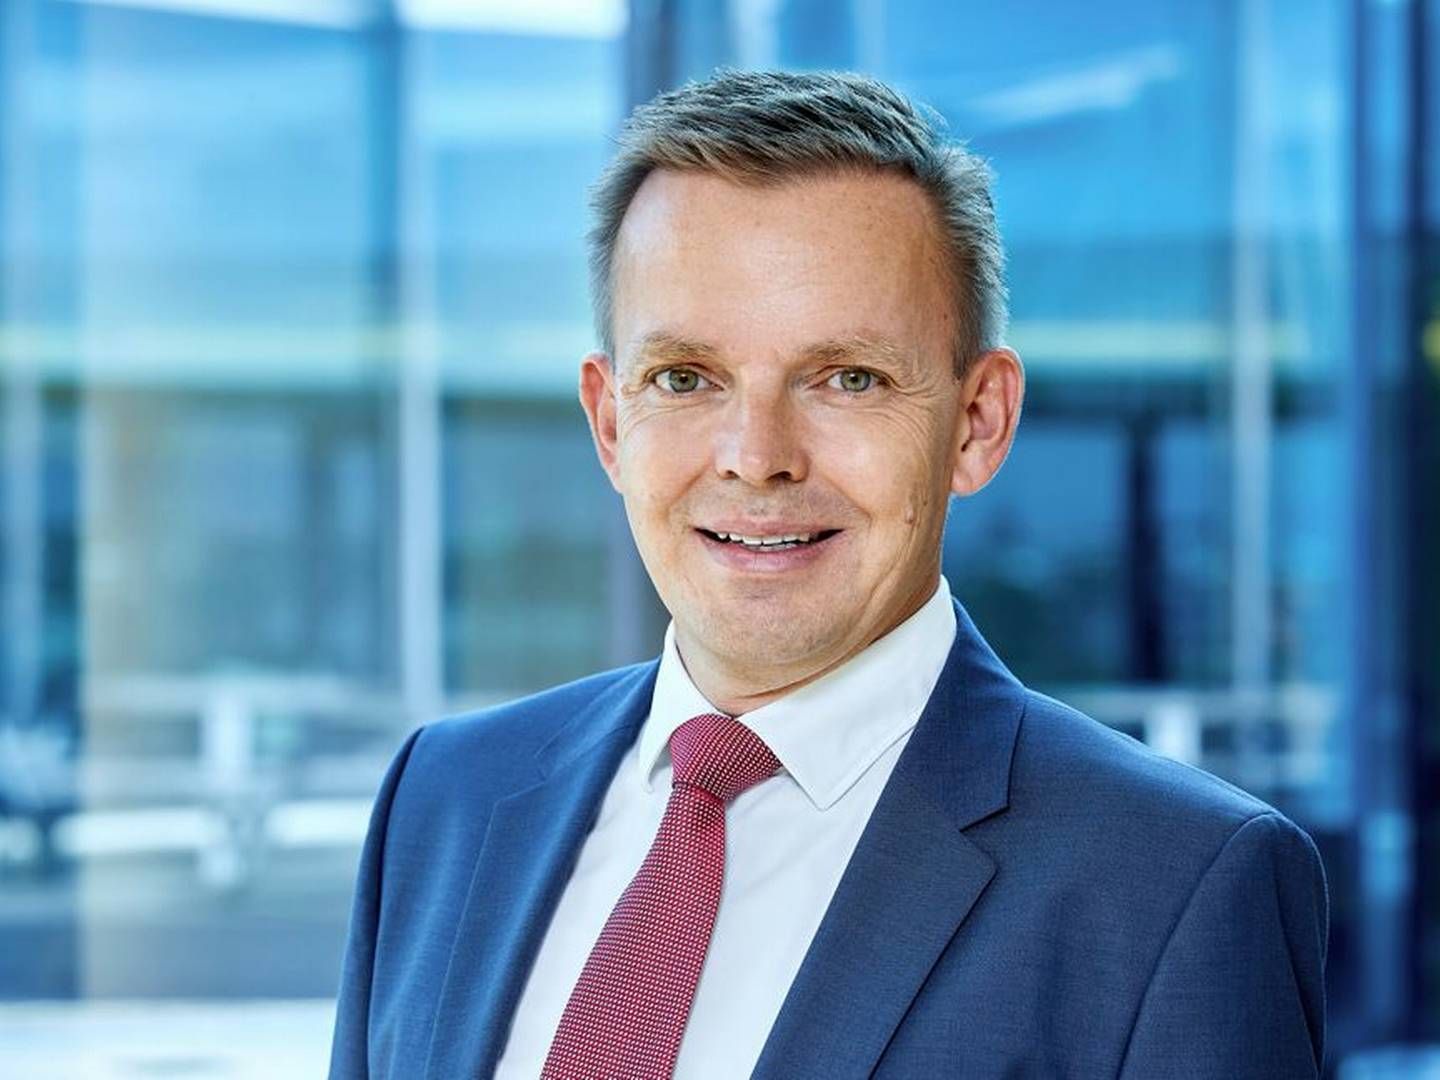 Lars Kronow er ny formand for Deloitte. Han overtager posten fra Gustav Jeppesen, som bliver næstformand. | Foto: Pr